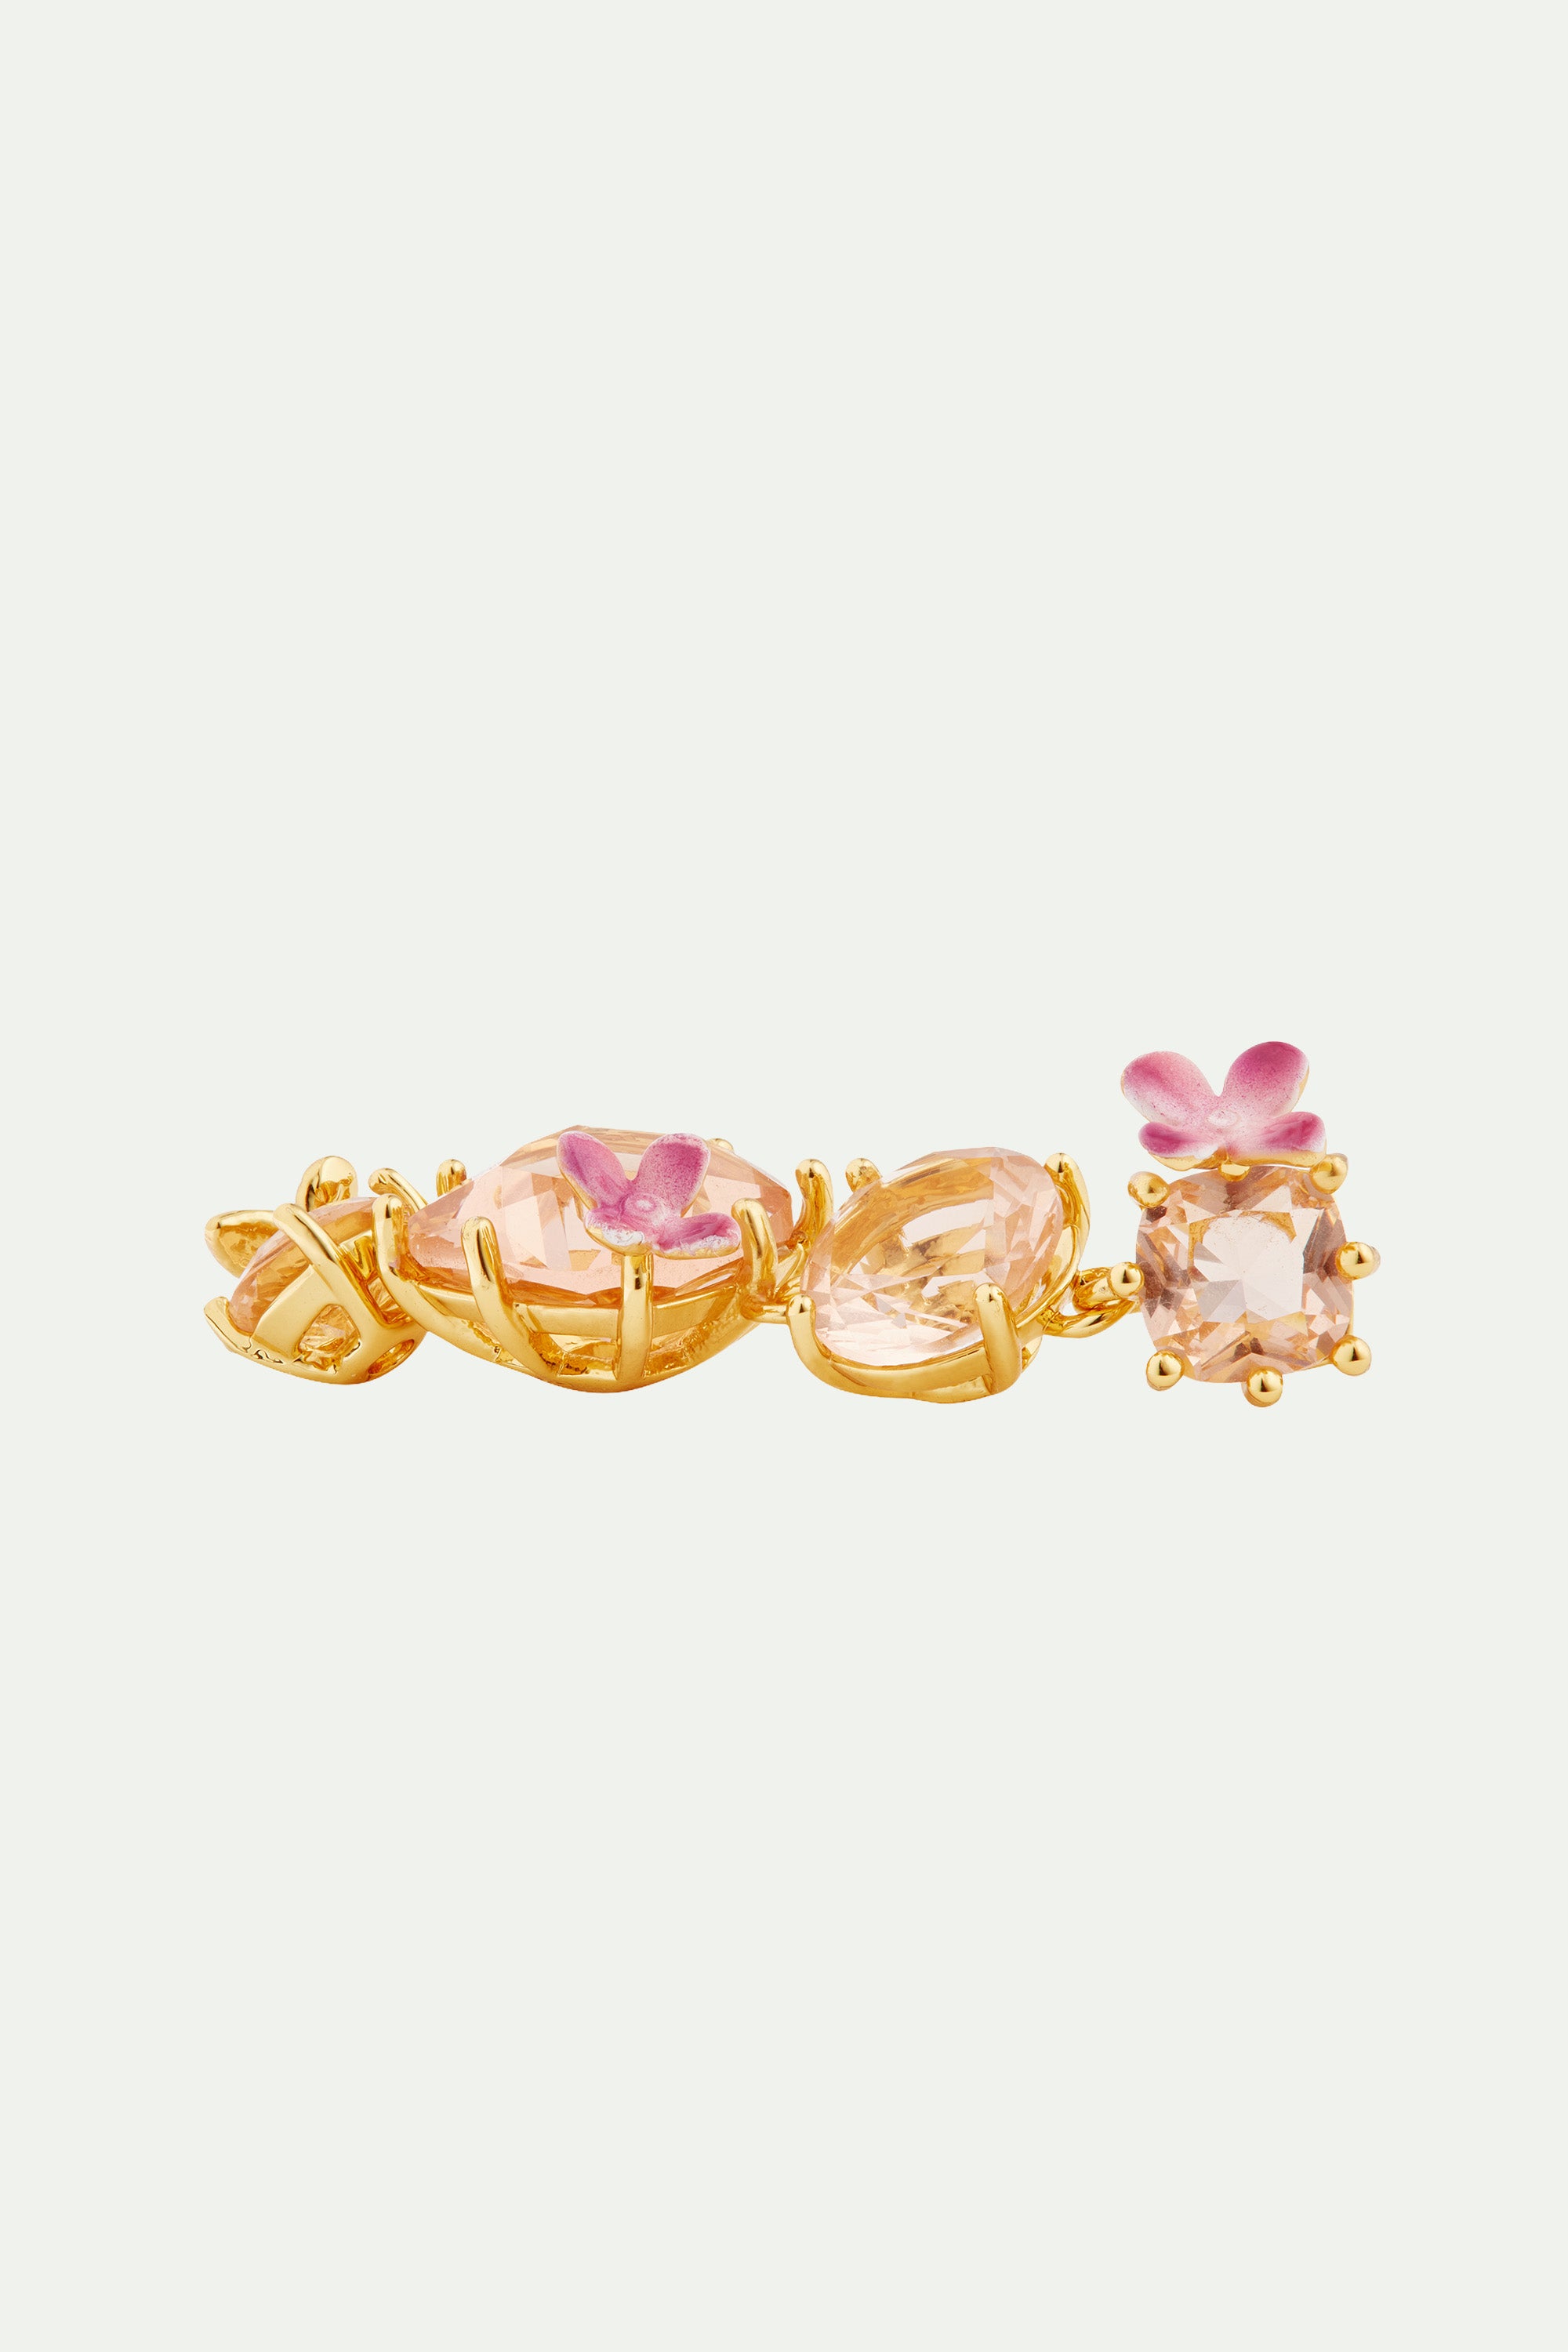 Boucles d'oreilles tiges pendantes fleurs 4 pierres et fleurs la diamantine rose abricot